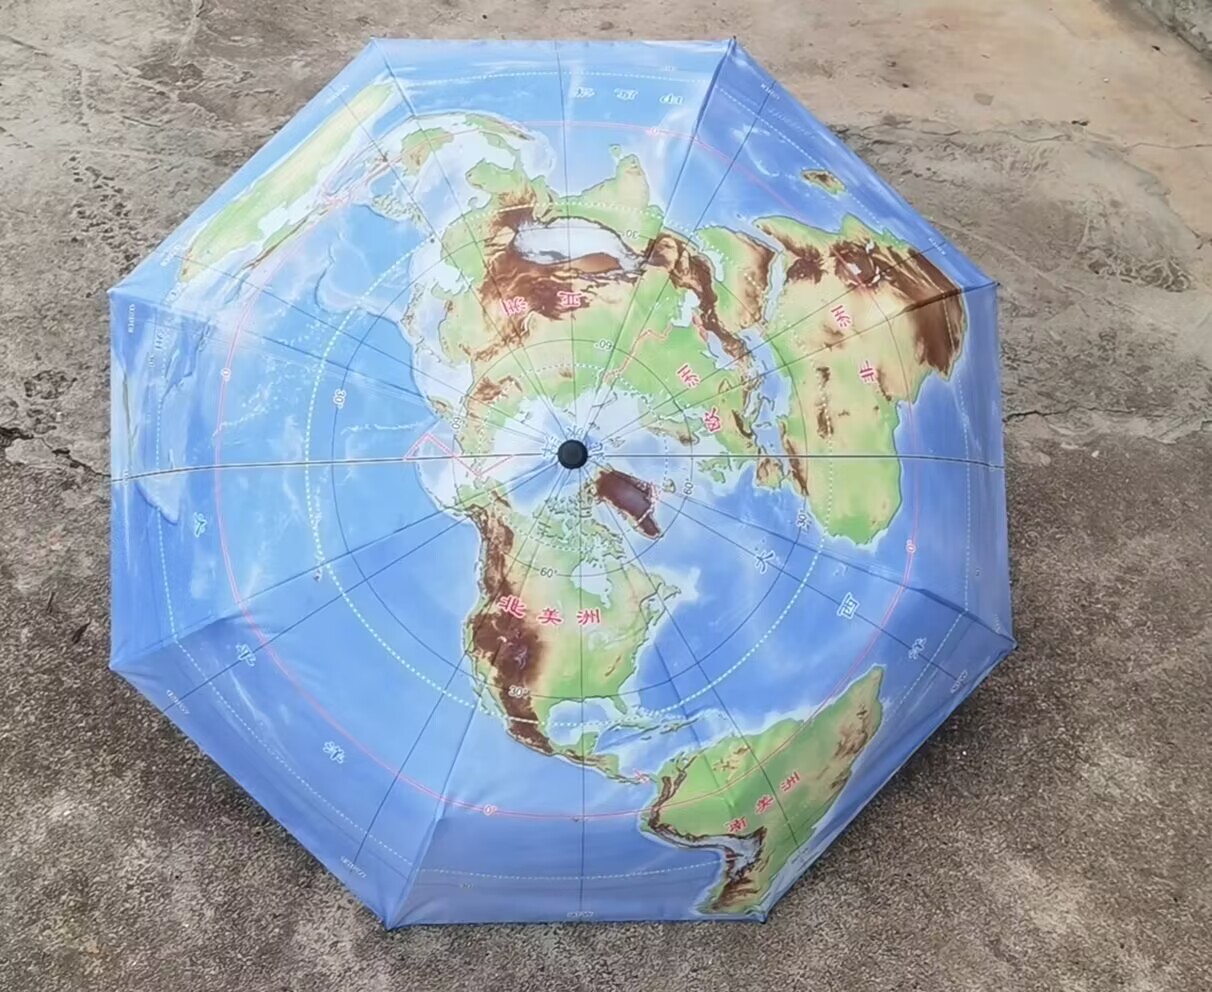 高档地图伞三折叠晴雨伞展示别致北极为中心50°S以北海陆双十